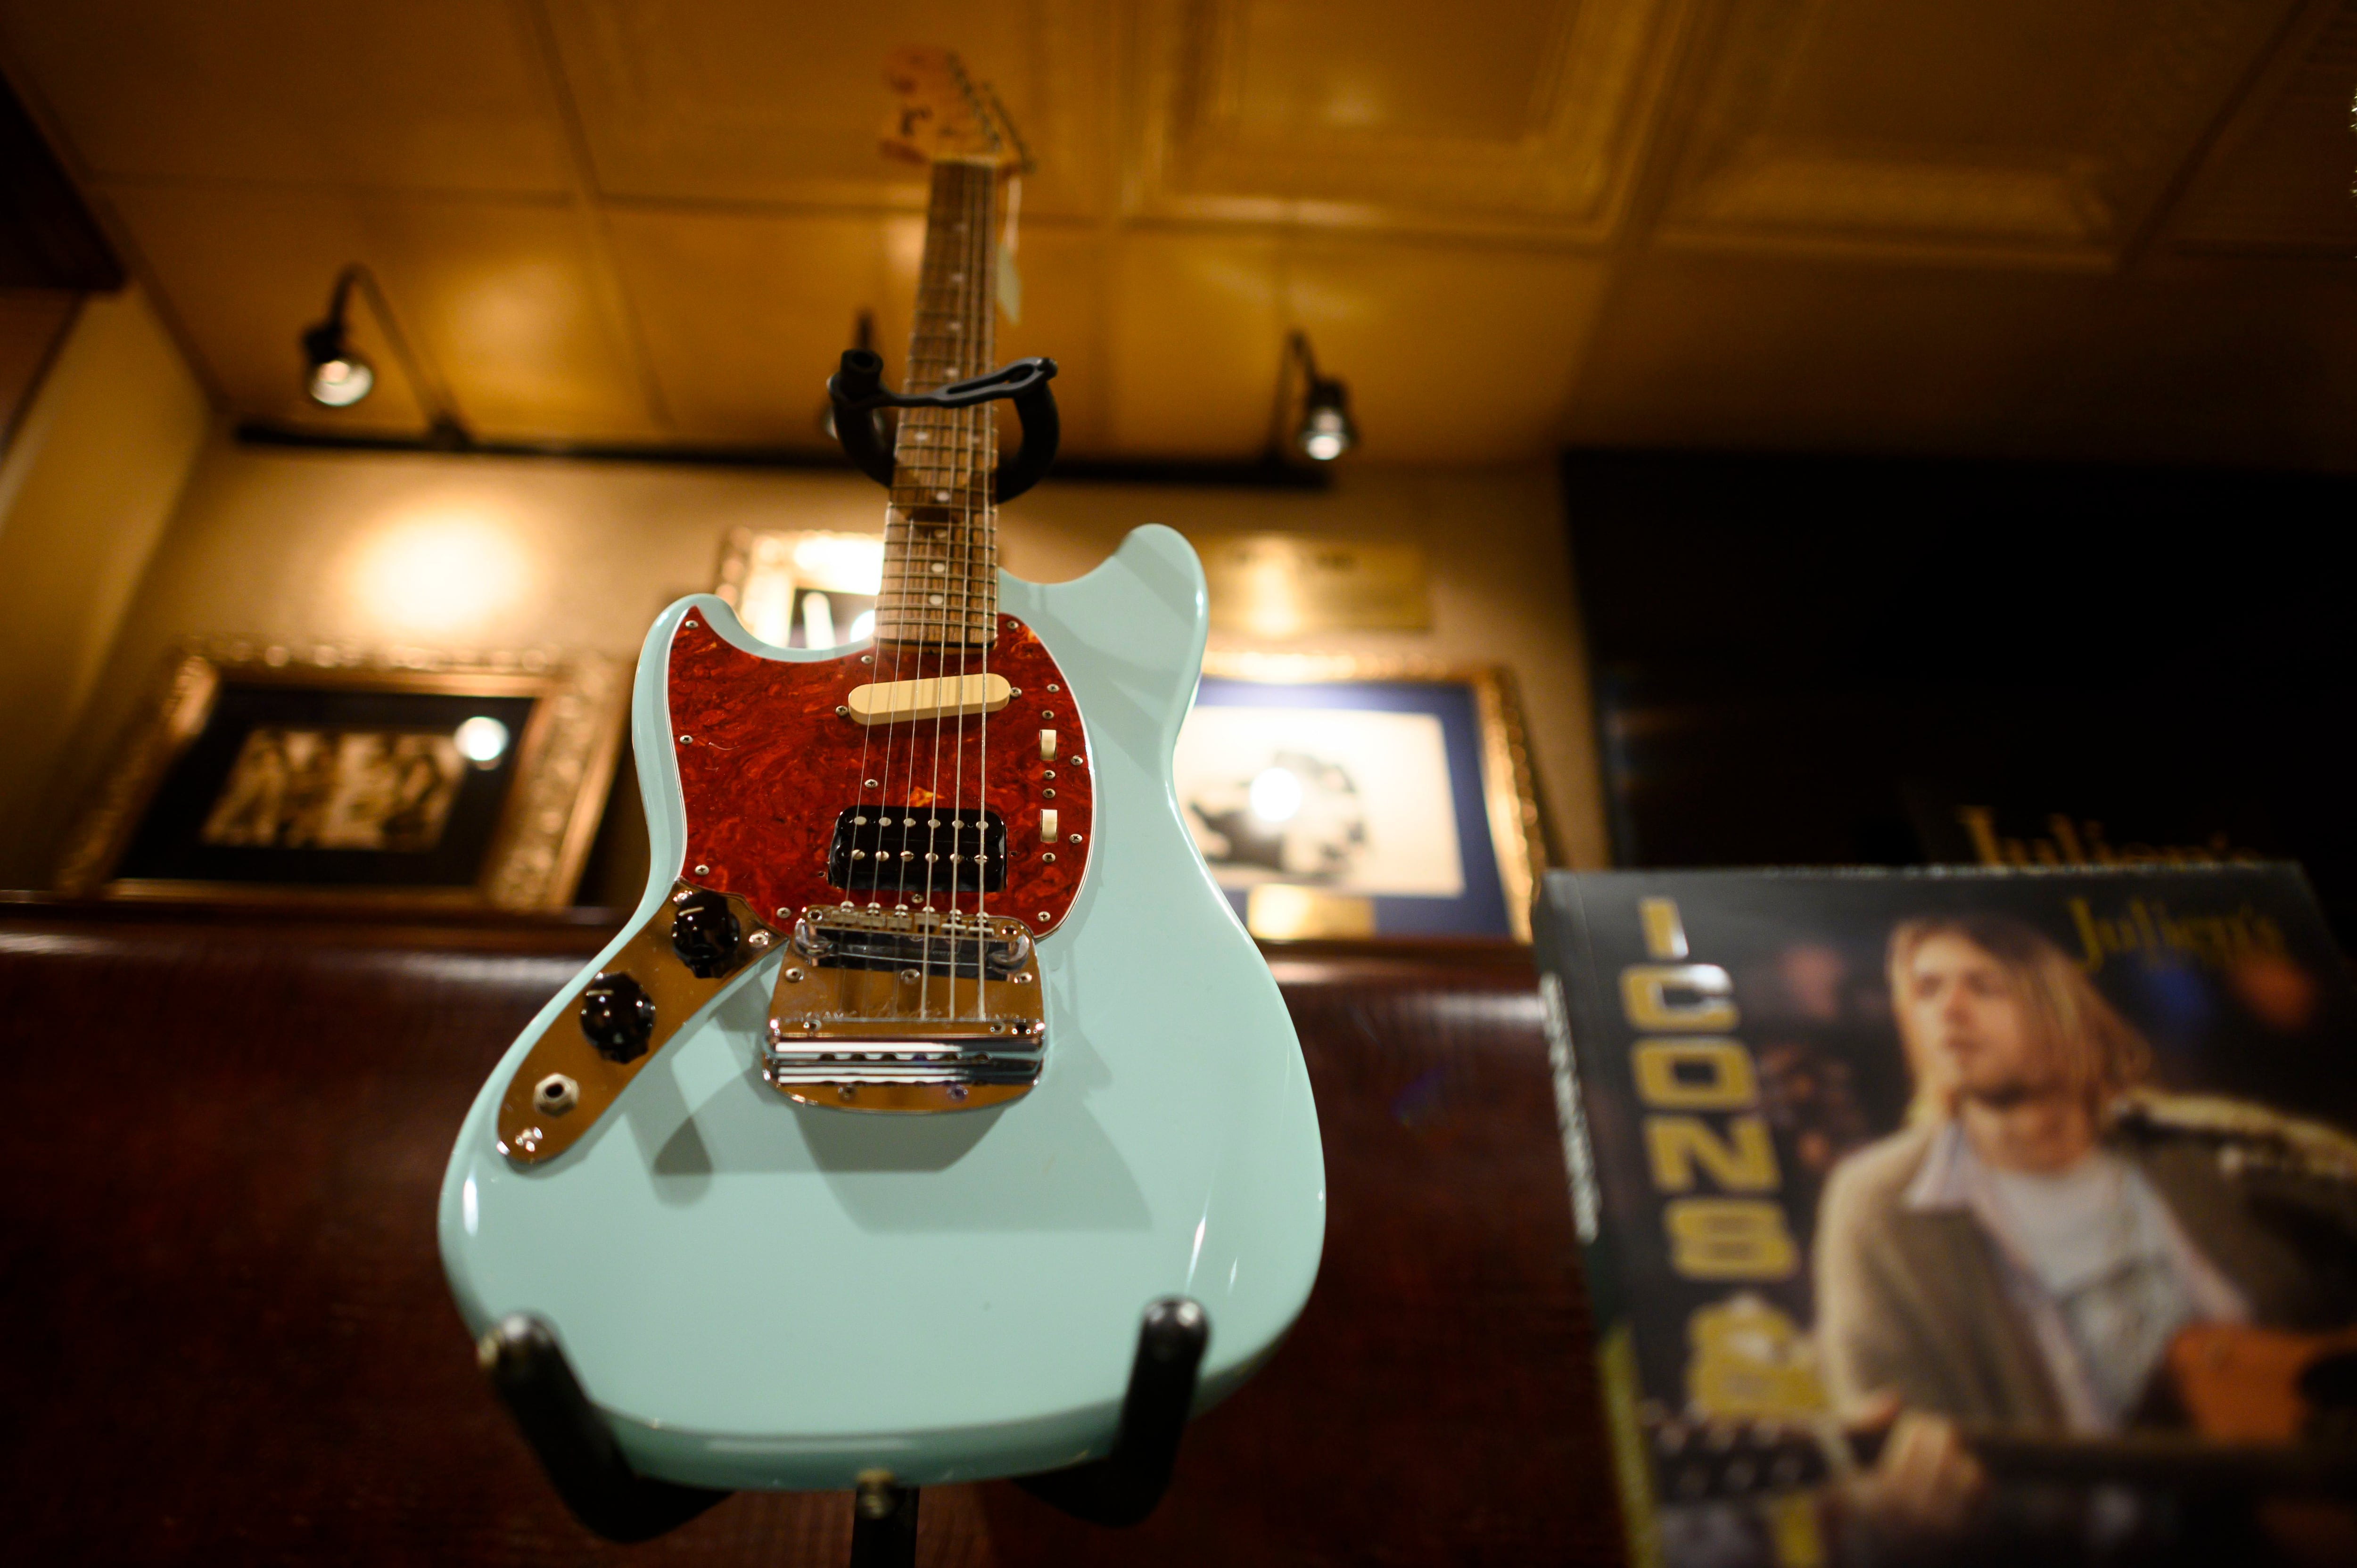 La guitarra Fender Mustang personalizada para zurdos de Kurt Cobain que usó durante la gira In Utero de Nirvana se exhibió en el Hard Rock Cafe de Nueva York en 2019 antes de venderse por unos 340.000 dólares en una subasta (Foto de Johannes EISELE / AFP)